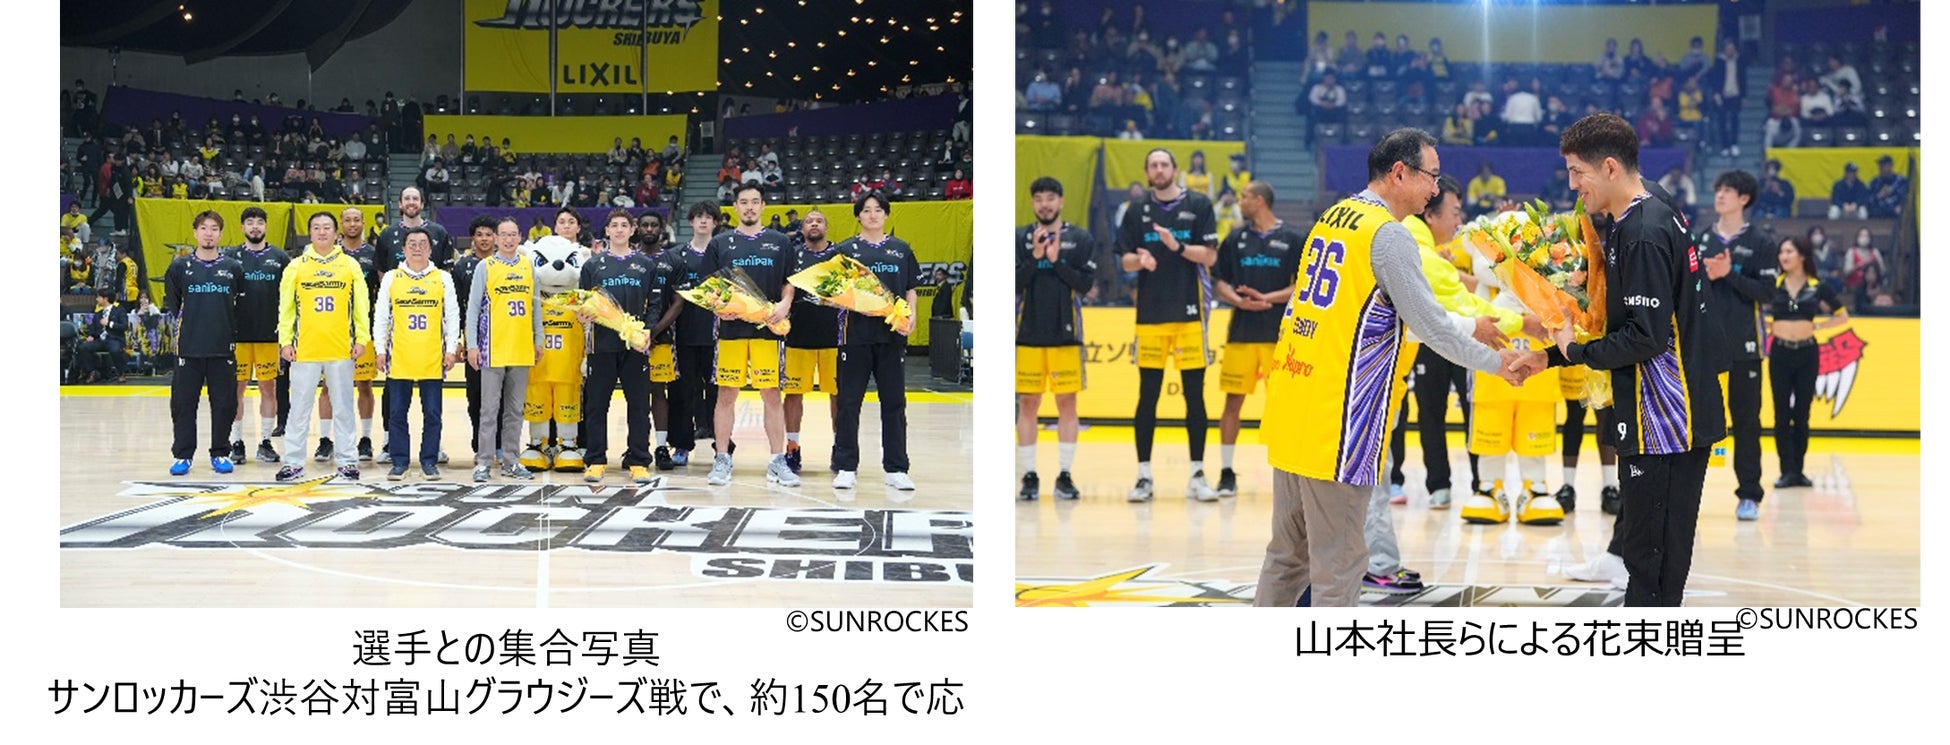 サンロッカーズ渋谷のホームゲームの公式戦で冠試合「日立ソリューションズDAY」を開催